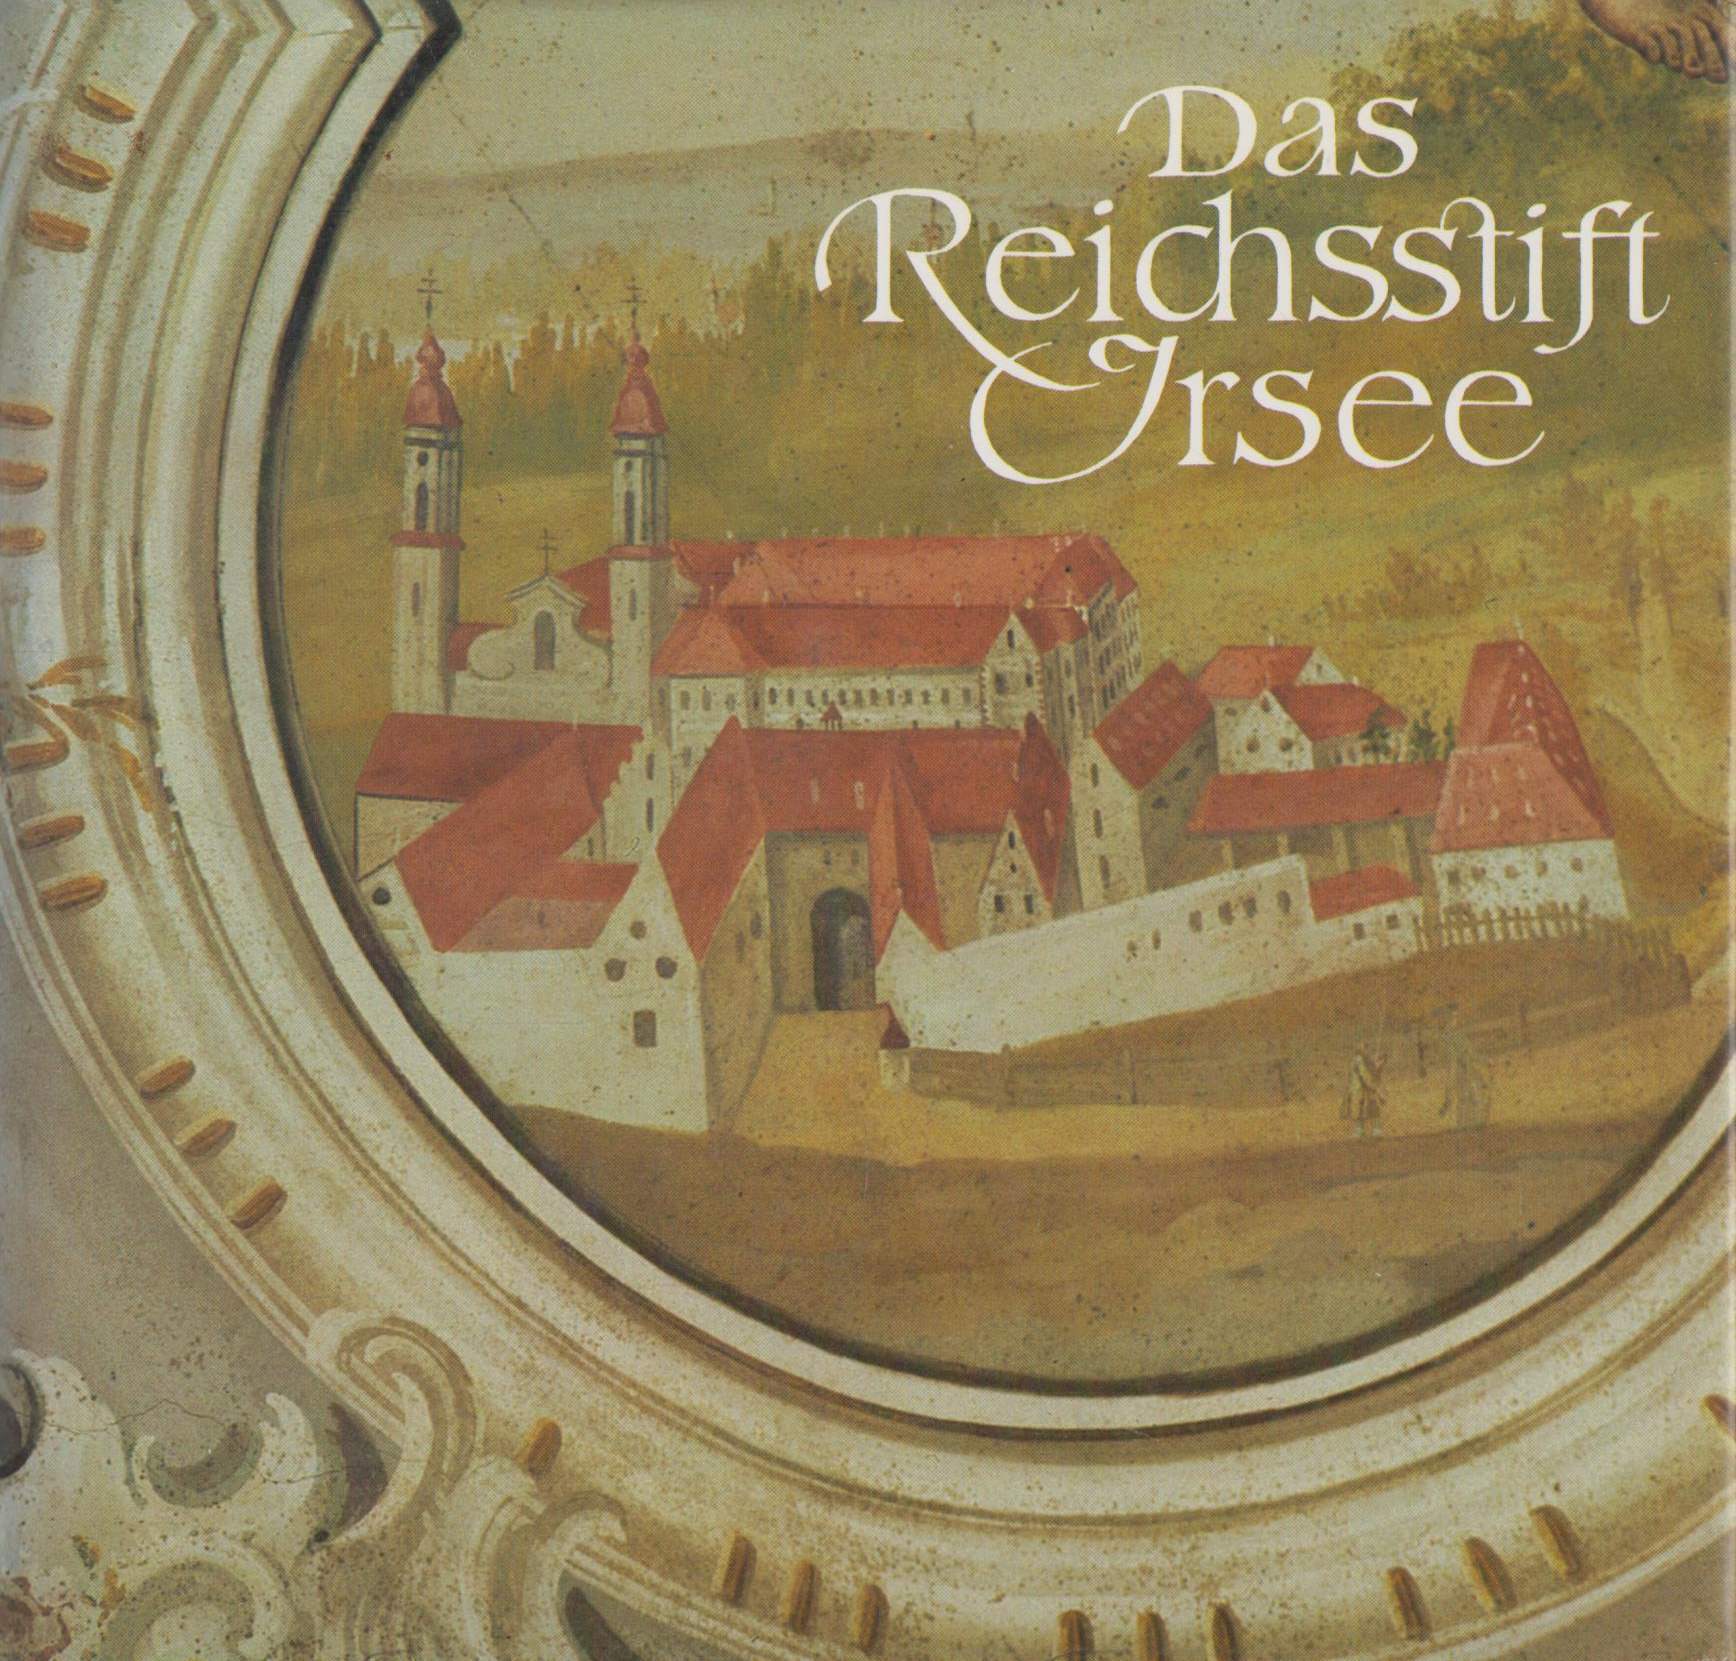 Das Reichsstift Irsee Vom Benediktinerkloster zum Bildungszentrum. Beiträge zu Geschichte, Kunst und Kultur. - Frei, Hans (Hrsg.)